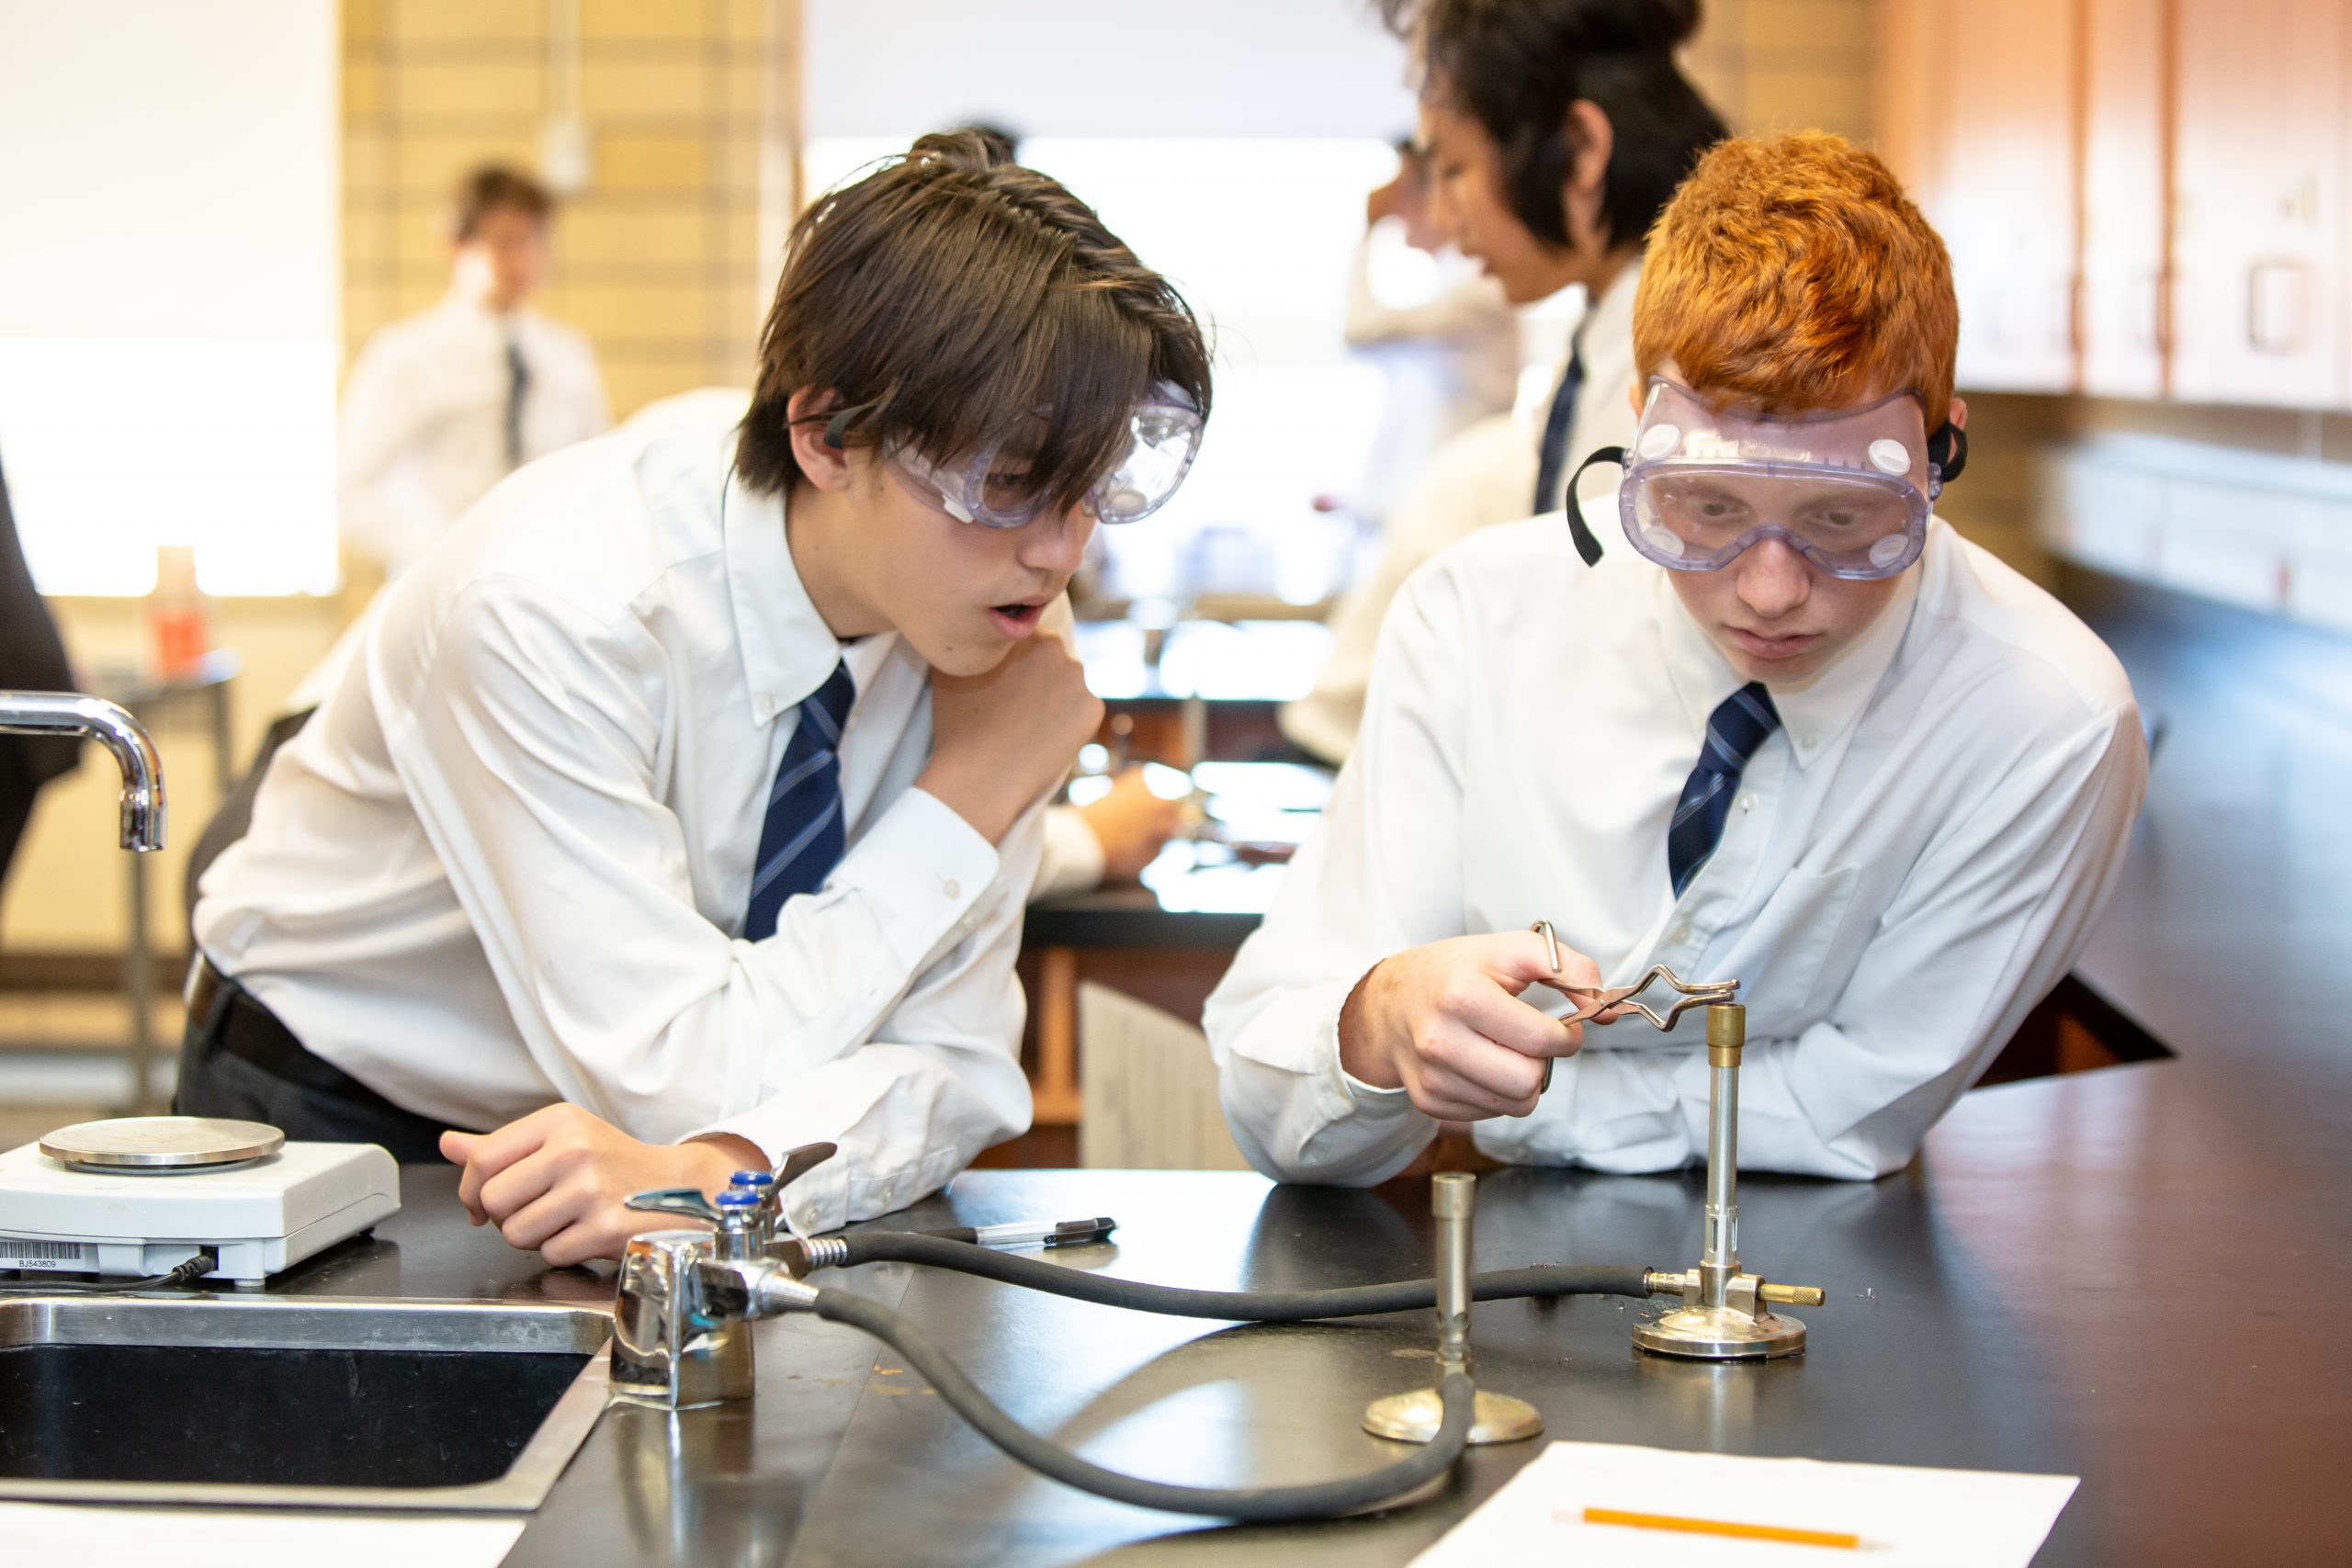 SMCS Programmes - academic programme,, boys doing science experiment